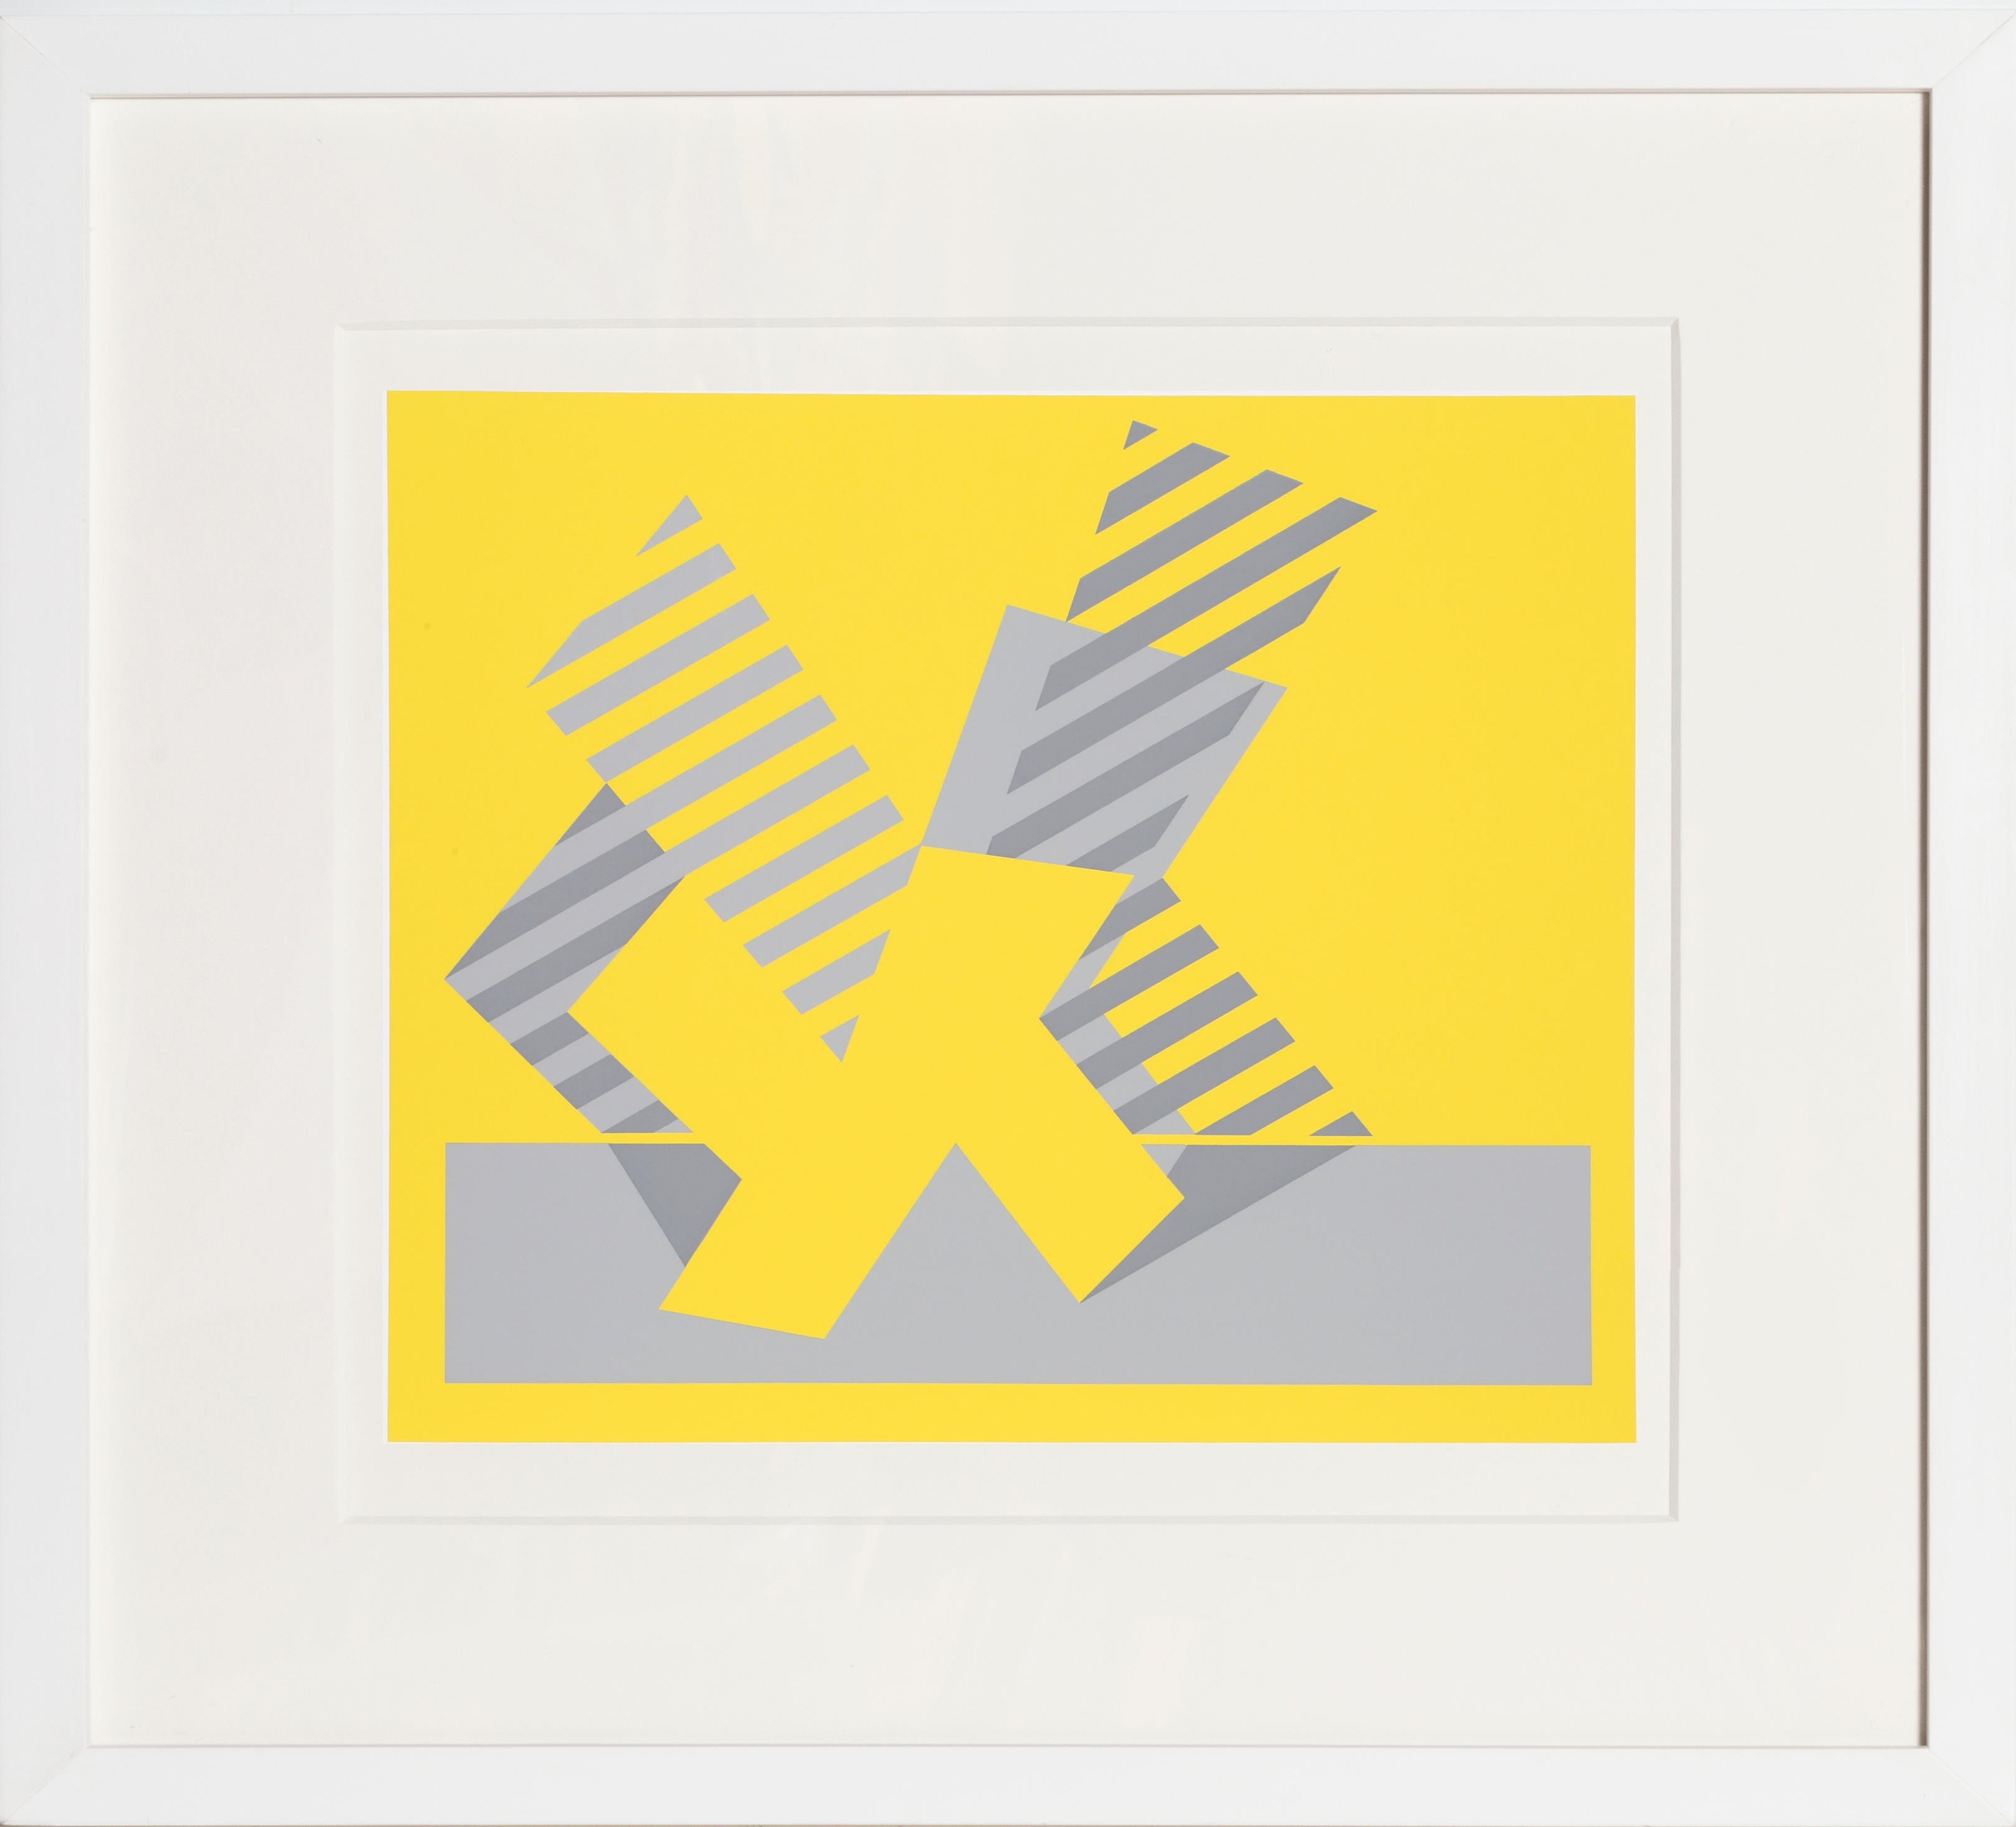 Artiste : Josef Albers, allemand (1888 - 1976)
Titre : K - P1, F4, I1
Année : 1972
Taille de l'édition : 1000
Support : Sérigraphie sur papier Mohawk Superfine Bristol
Taille de l'image : 12 x 14 pouces
Taille : 15 x 20 in. (38.1 x 50.8 cm)
Taille